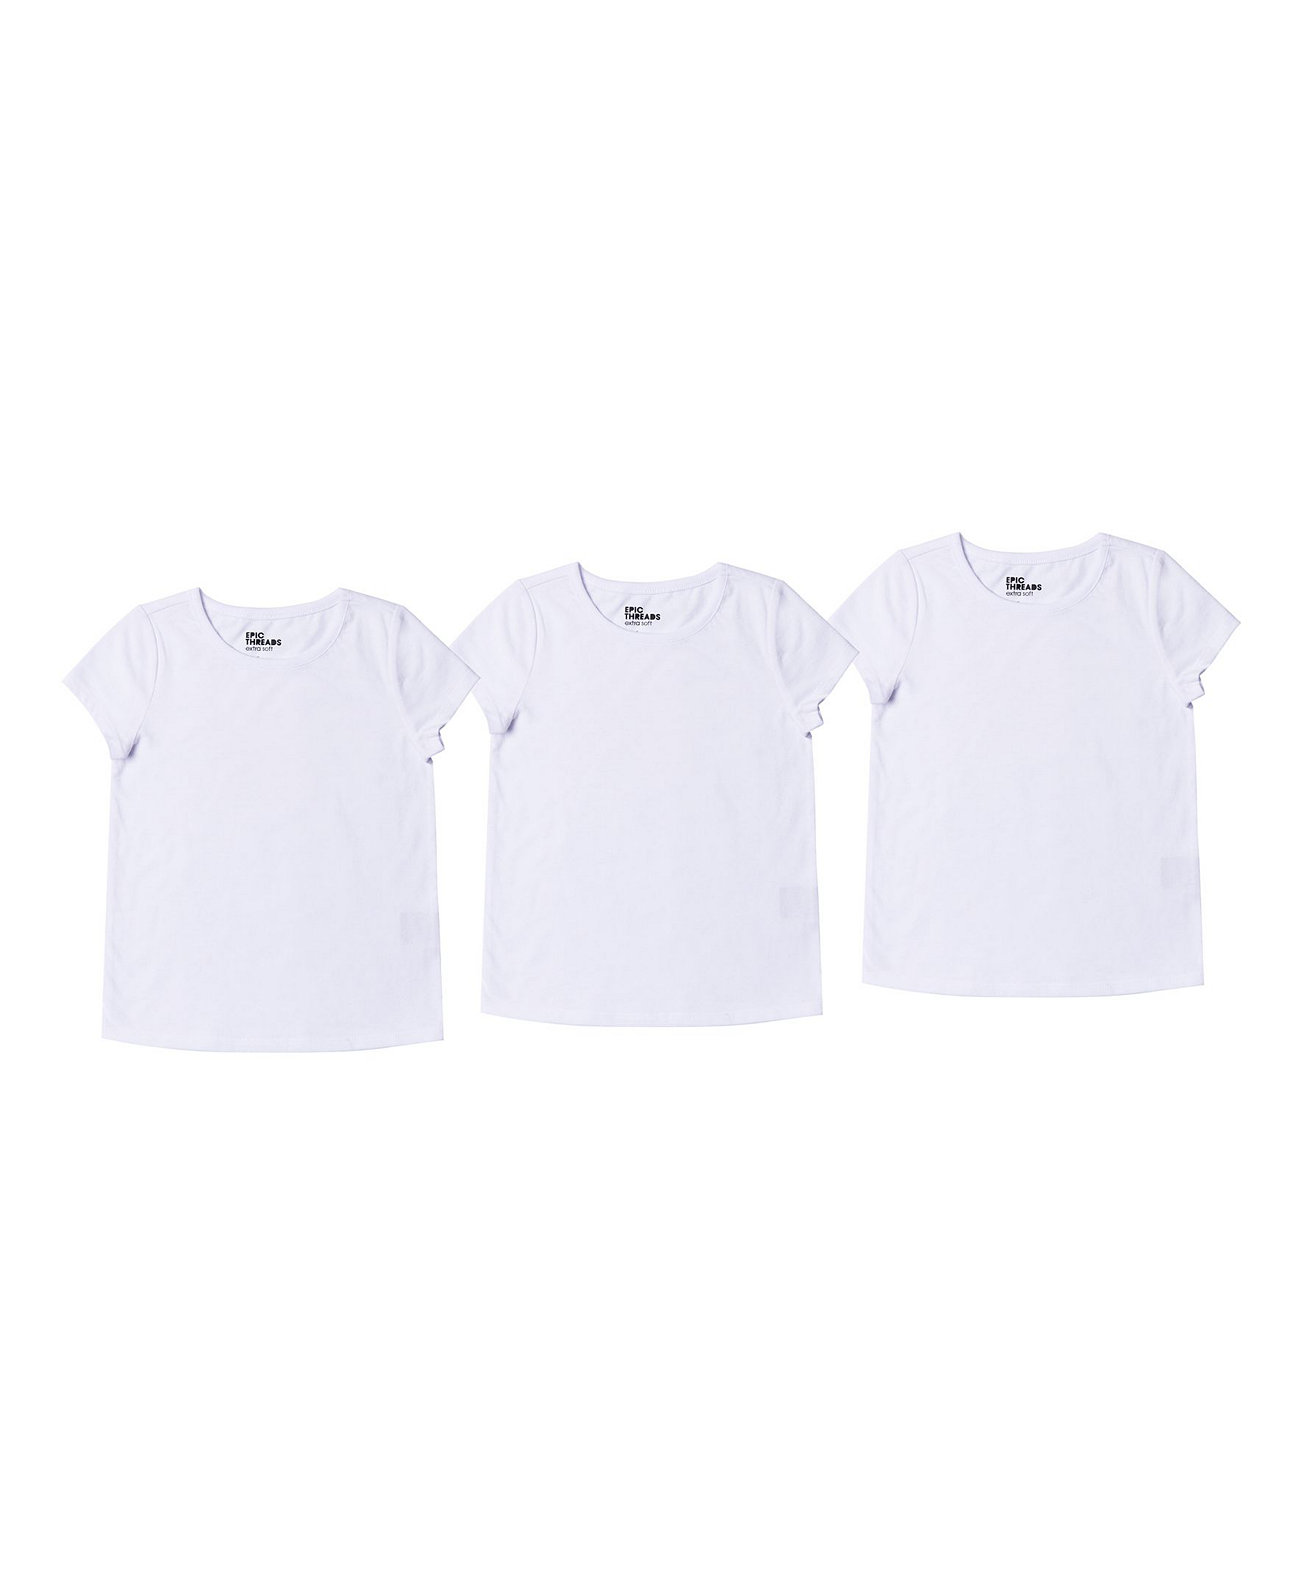 Комплект однотонной базовой футболки для больших девочек, набор из 3 шт. Epic Threads